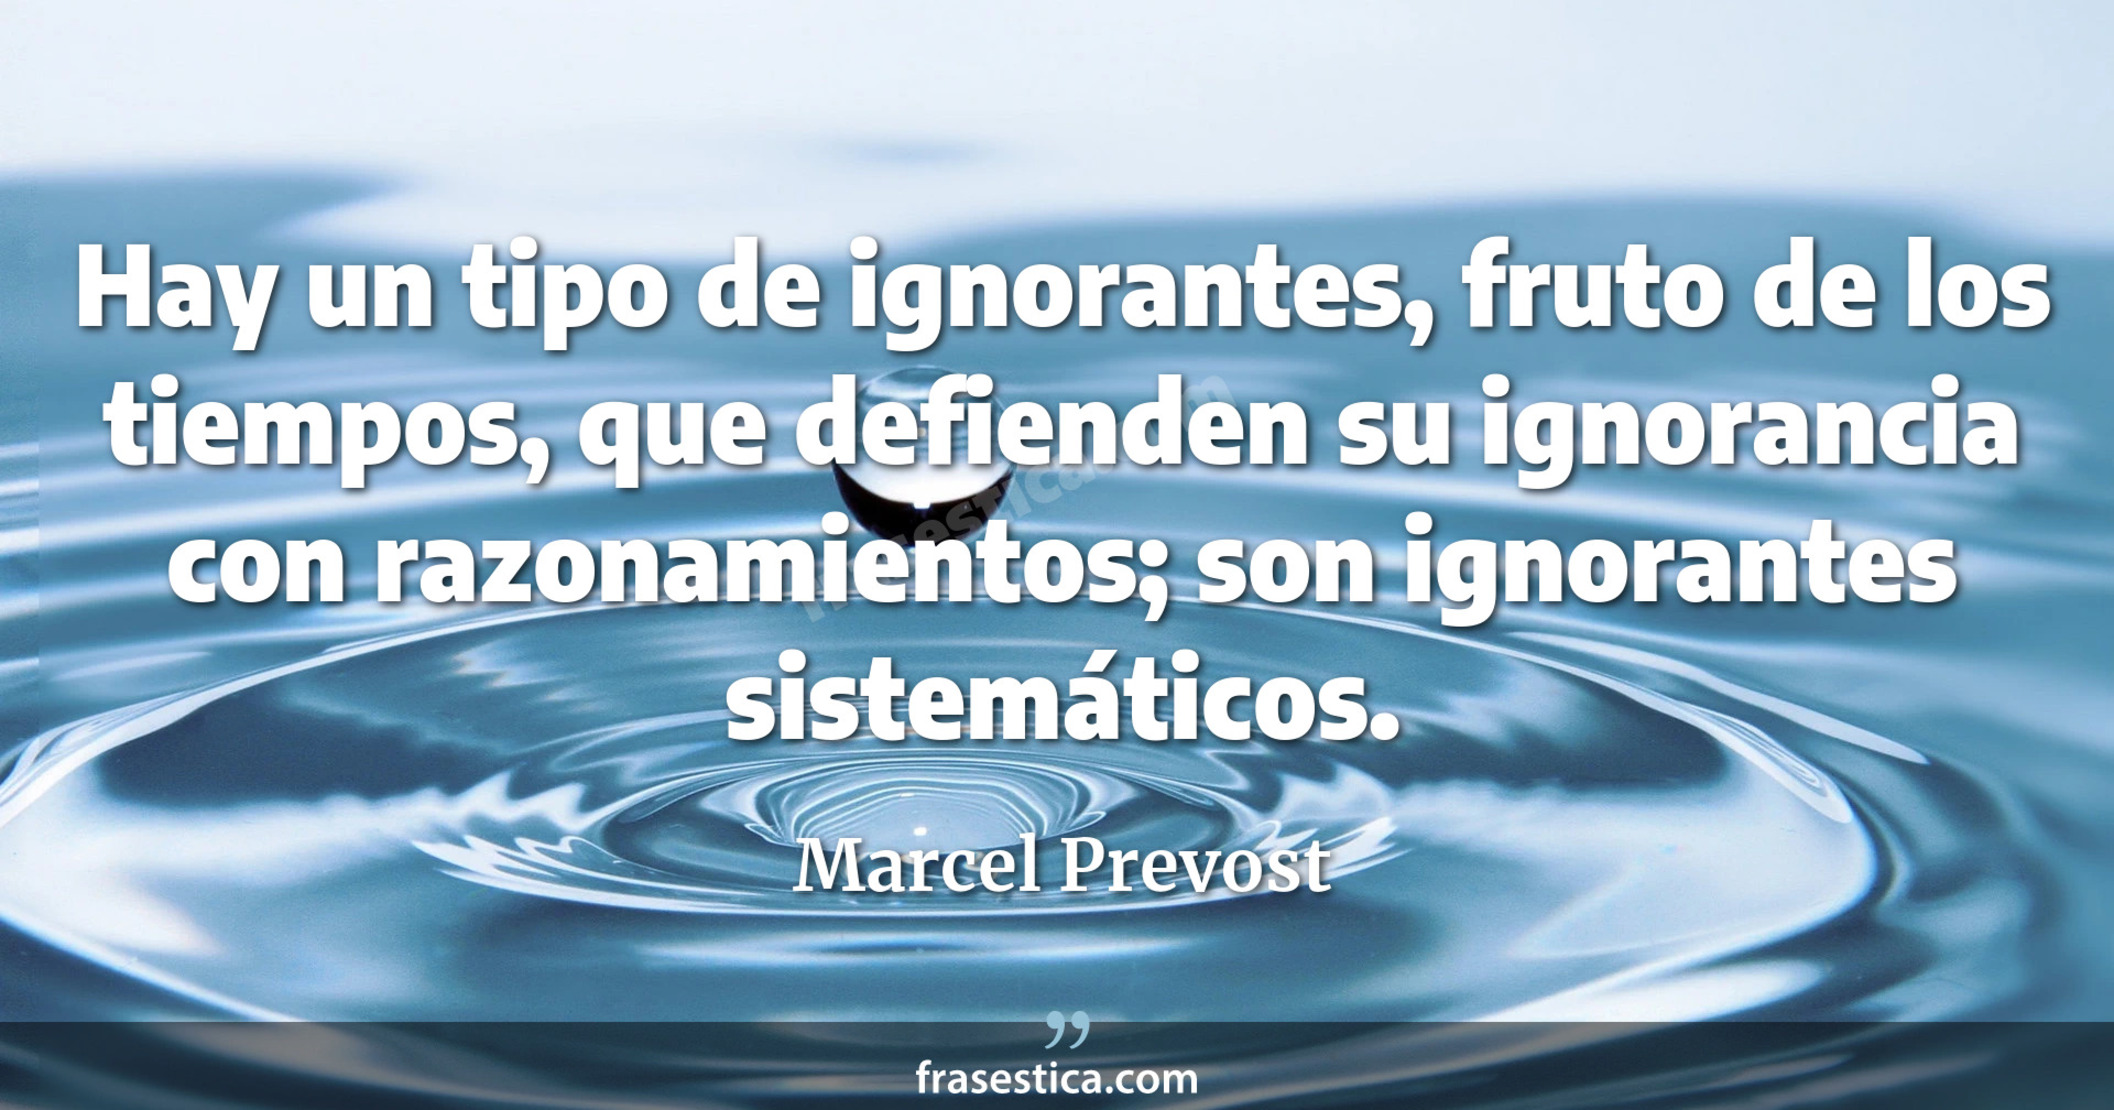 Hay un tipo de ignorantes, fruto de los tiempos, que defienden su ignorancia con razonamientos; son ignorantes sistemáticos. - Marcel Prevost